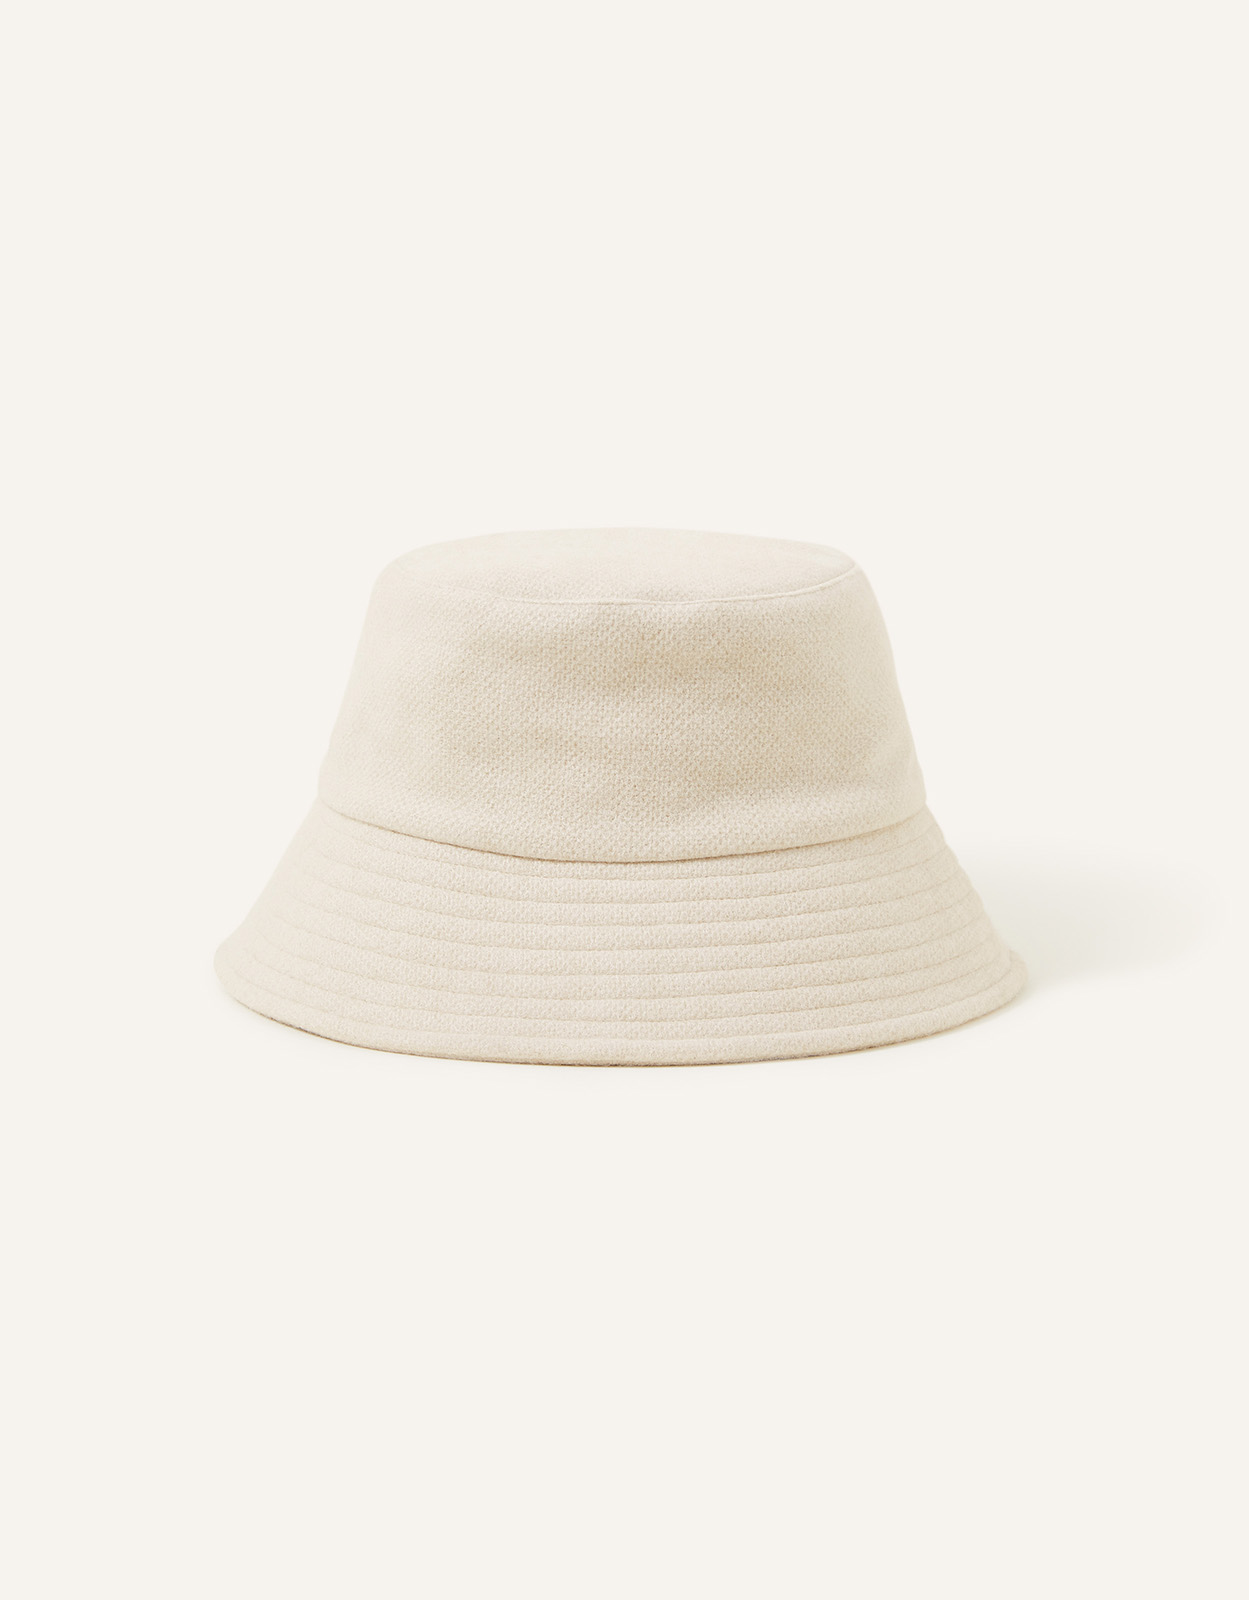 Accessorize Women's Soft Textured Bucket Hat